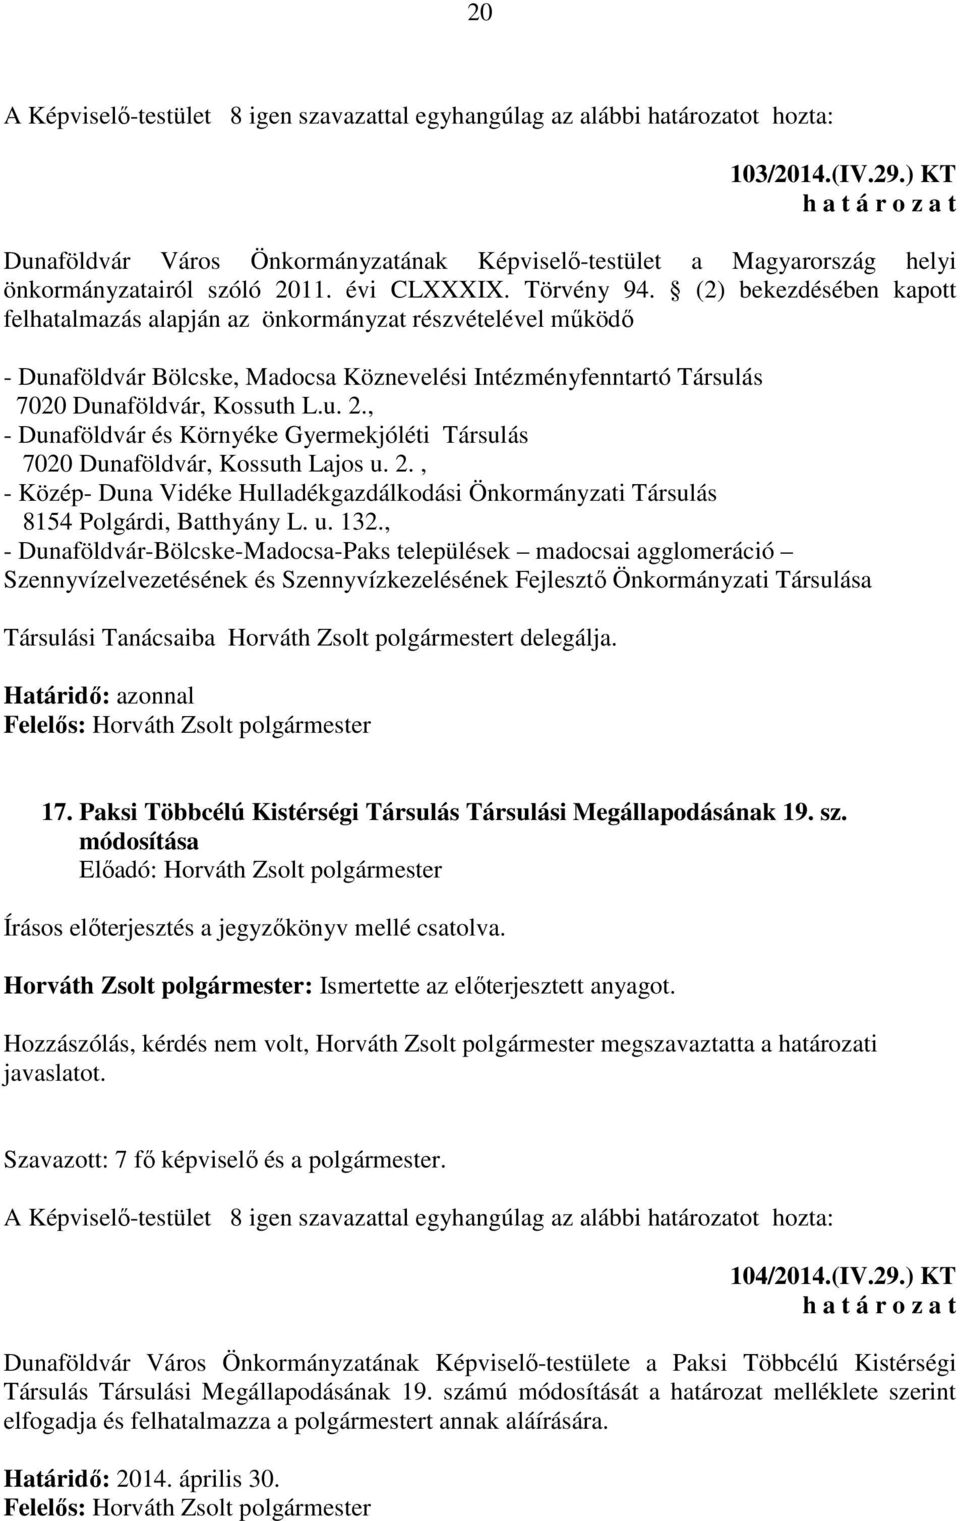 (2) bekezdésében kapott felhatalmazás alapján az önkormányzat részvételével működő - Dunaföldvár Bölcske, Madocsa Köznevelési Intézményfenntartó Társulás 7020 Dunaföldvár, Kossuth L.u. 2.